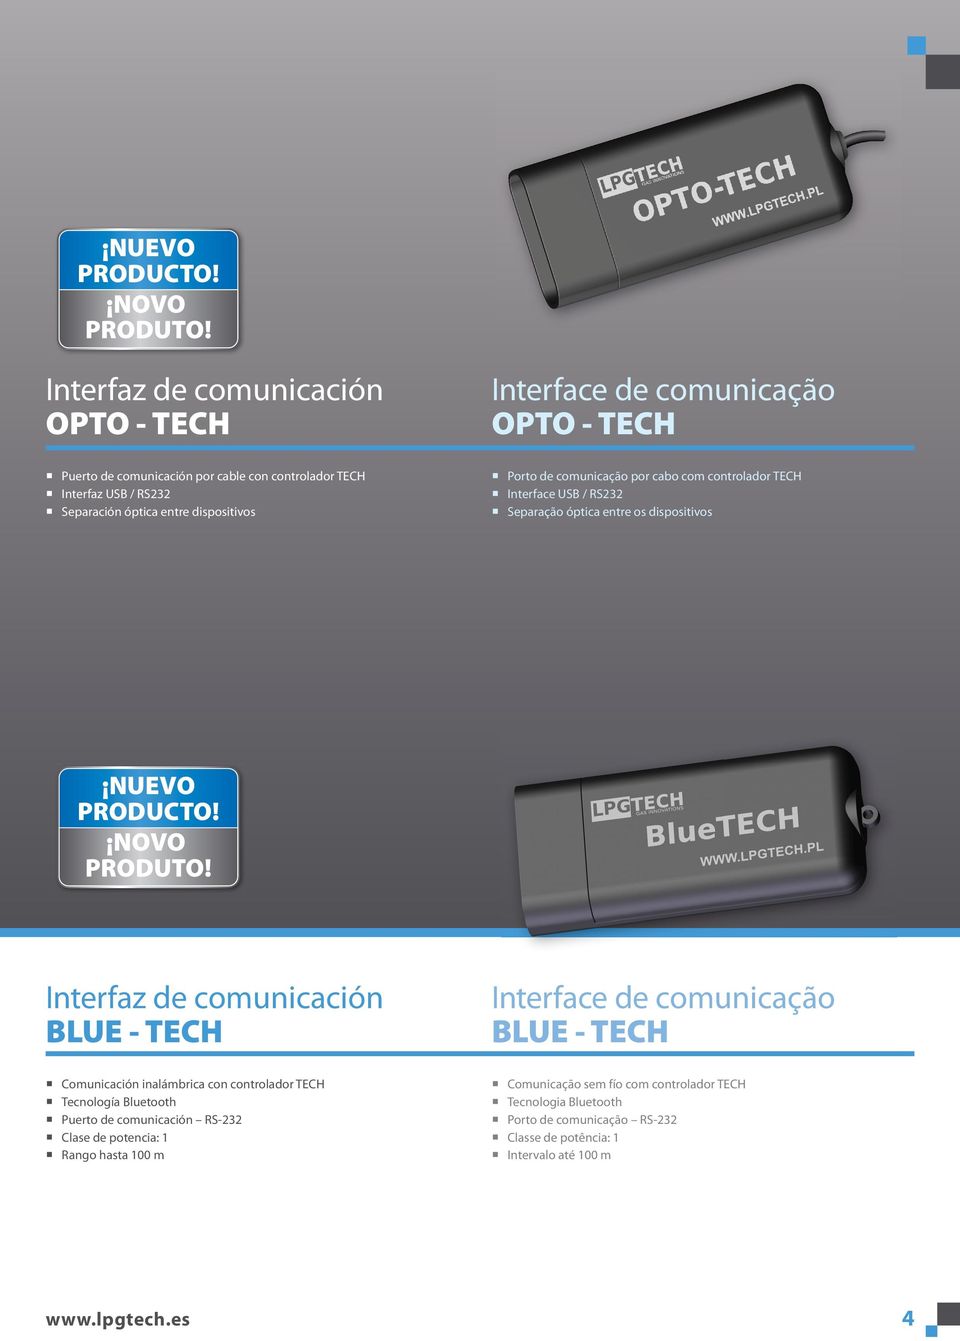 BLUE - TECH Interface de comunicação BLUE - TECH Comunicación inalámbrica con controlador TECH Tecnología Bluetooth Puerto de comunicación RS-232 Clase de